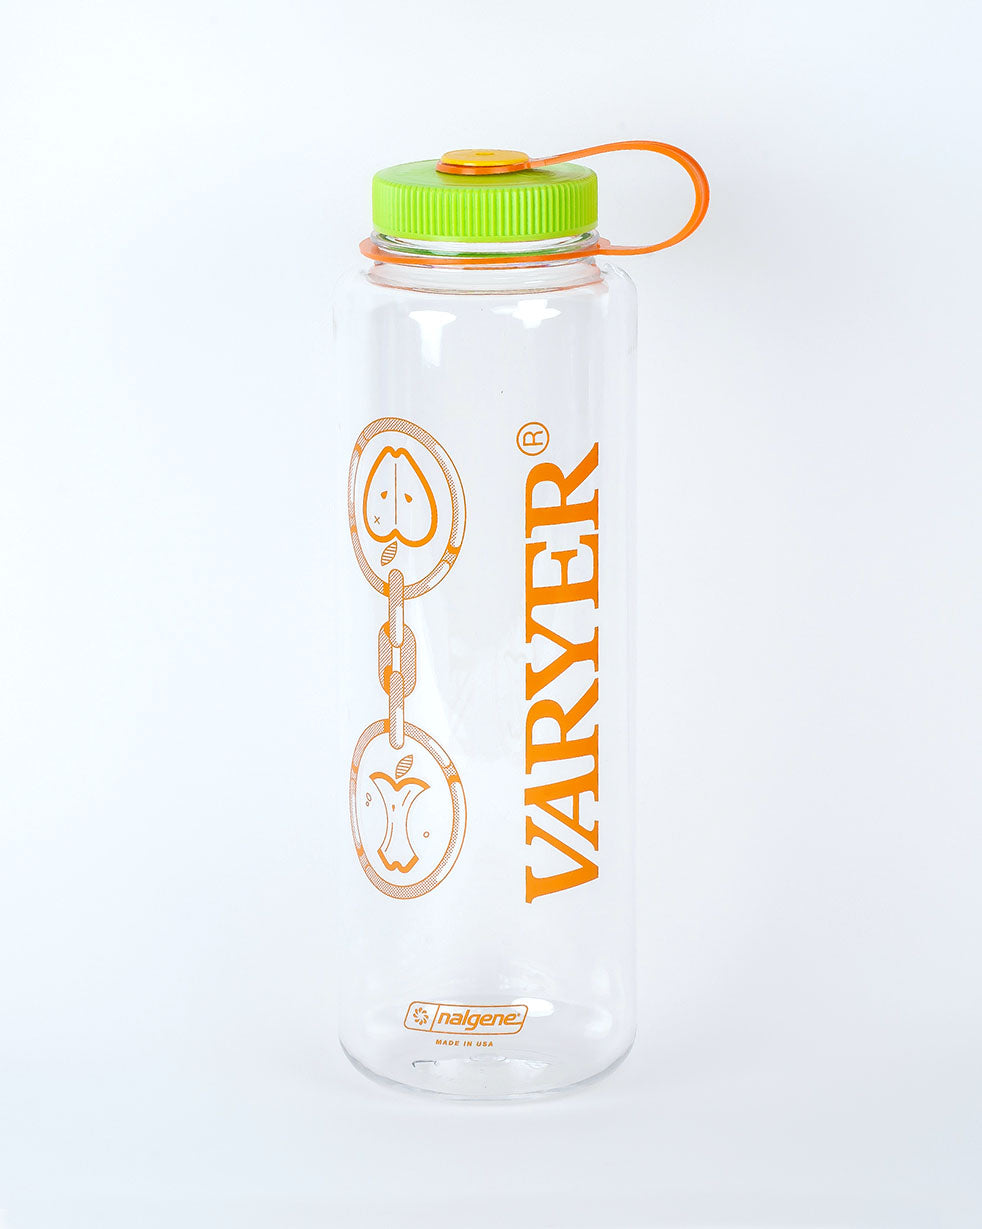 Varyer Origin Collection: Tall Nalgene Bottle – Varyer Shop